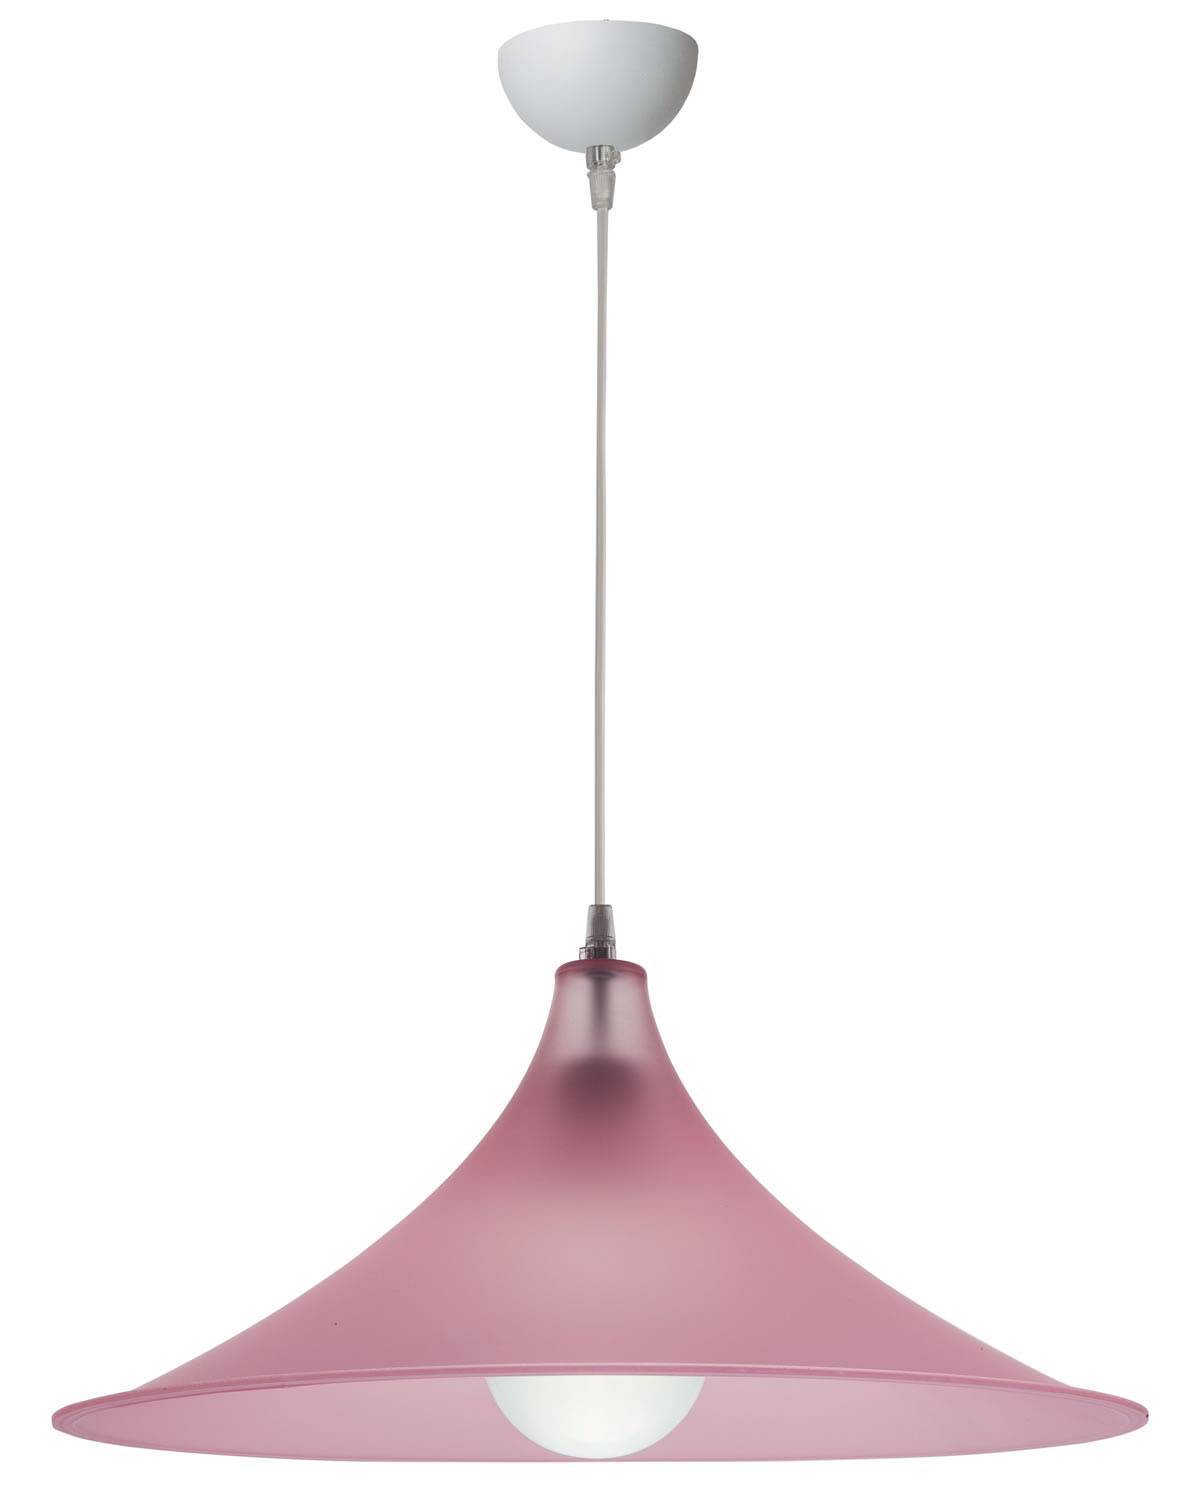 Φωτιστικό μονόφωτο Plexiglass ροζ σατινέ Ε27 Φ40